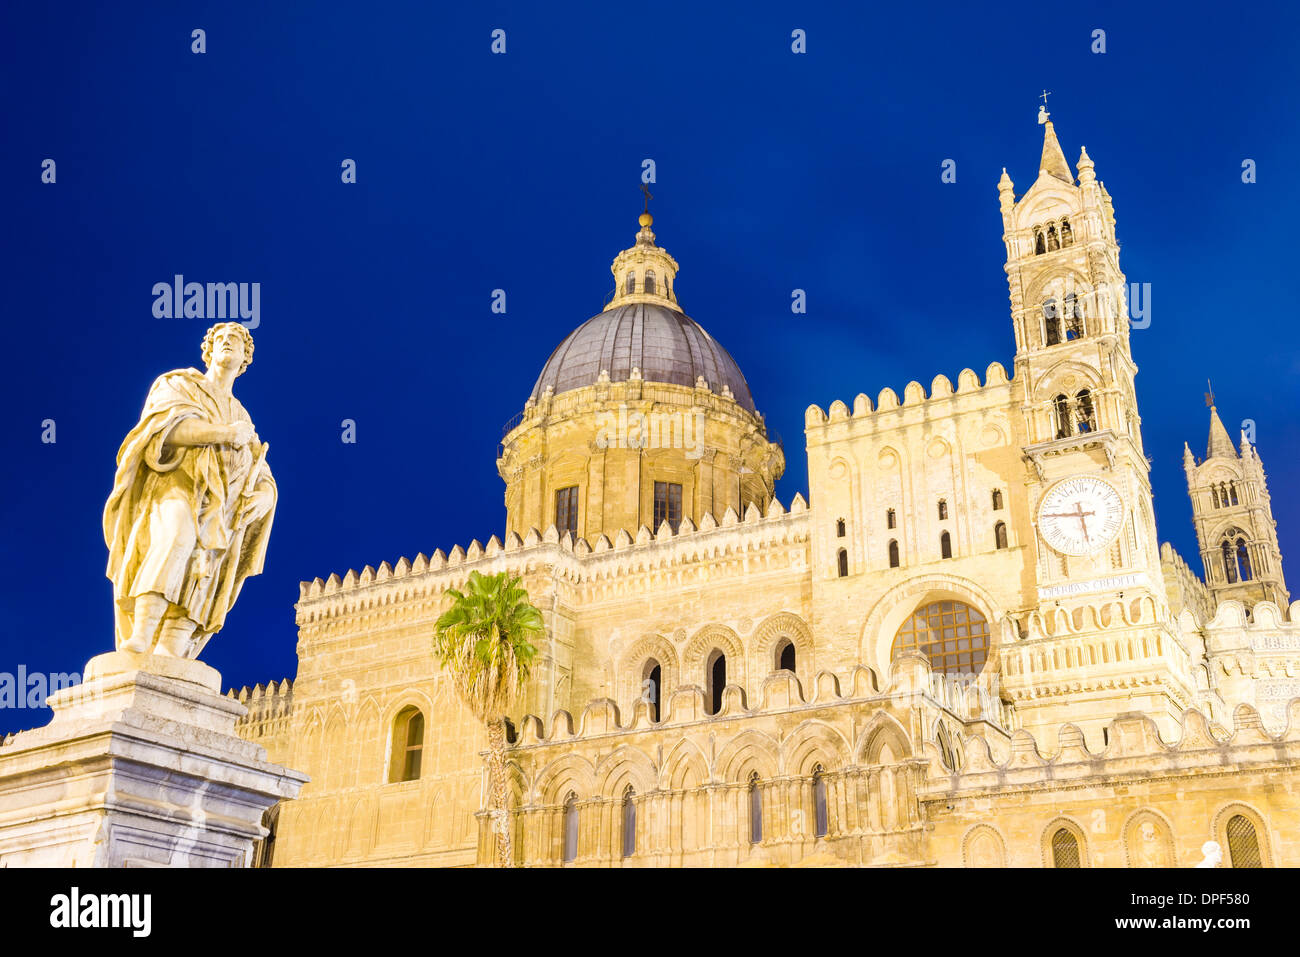 Kathedrale von Palermo in der Nacht (Duomo di Palermo), zeigen, Statue, Kuppel und Glockenturm, Palermo, Sizilien, Italien, Europa Stockfoto